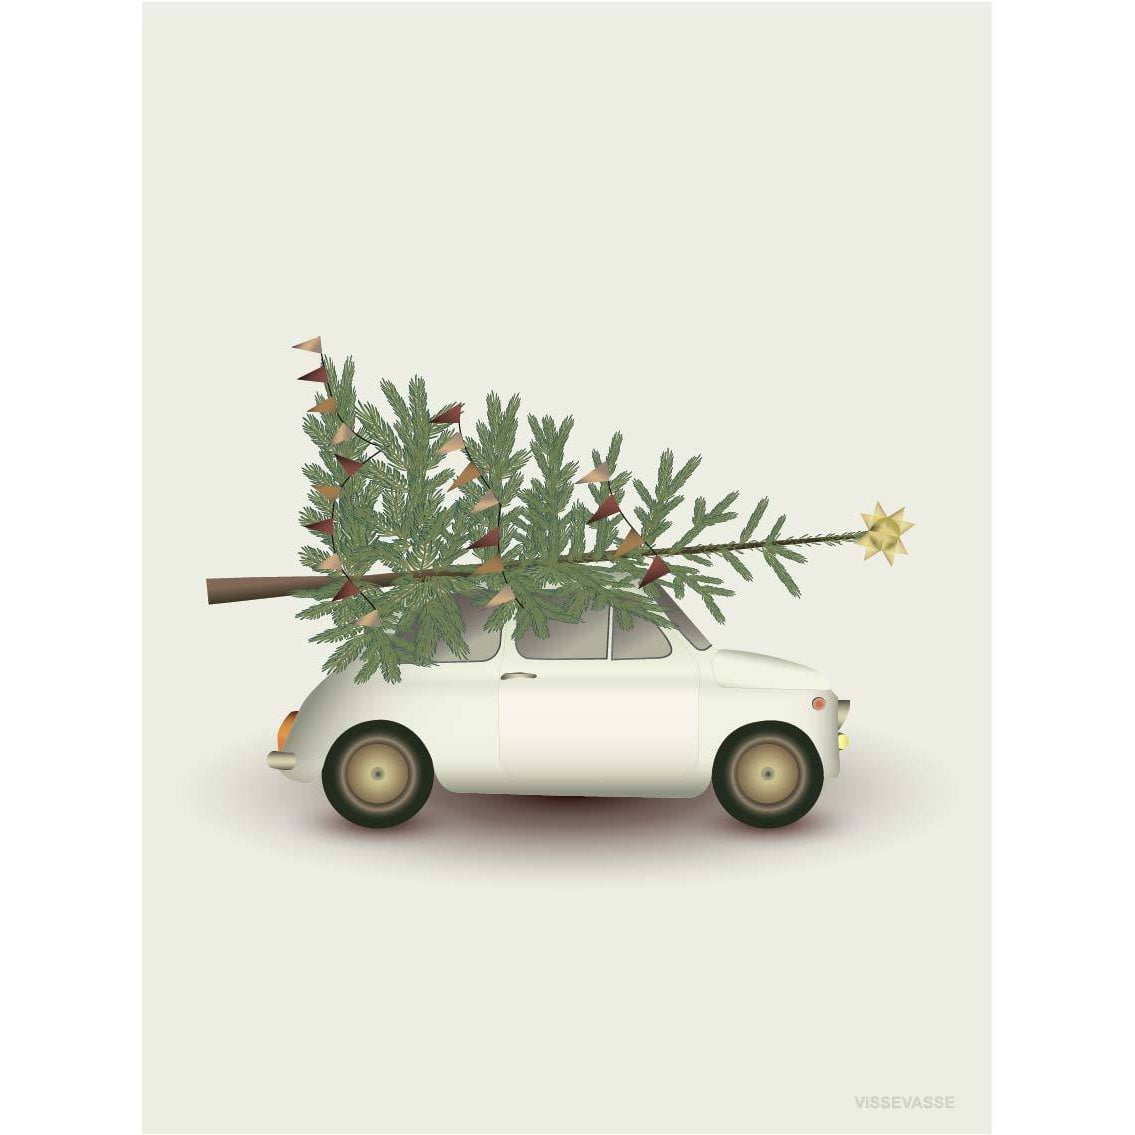 Vissevasse Biglietto di auguri di Natale e auto per auto, 10,5x15 cm